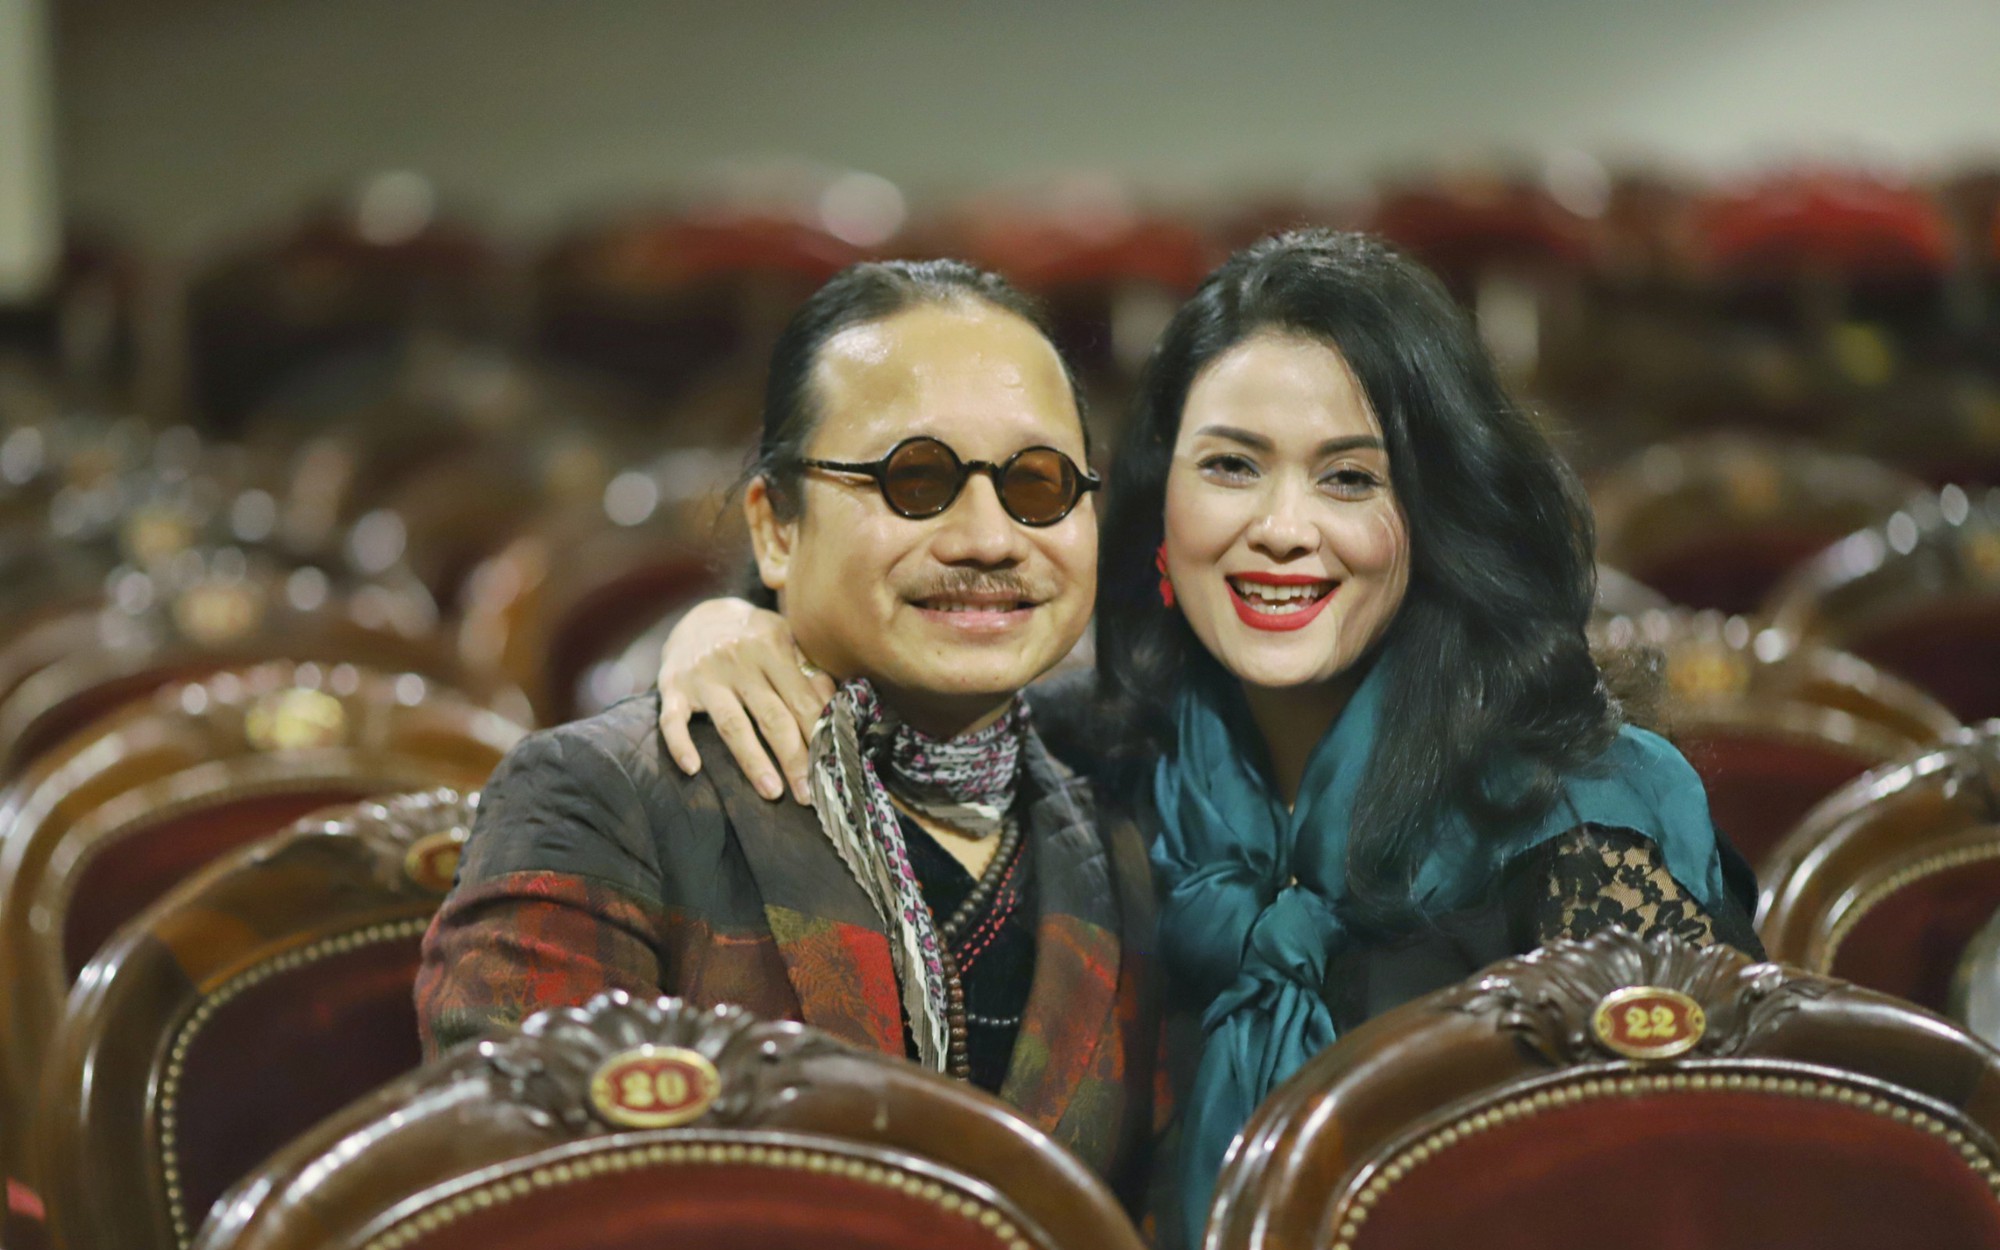 Hôn nhân hơn 30 năm của nghệ sĩ saxophone Trần Mạnh Tuấn và vợ xinh đẹp, vừa gặp đã biết là 'chân ái'